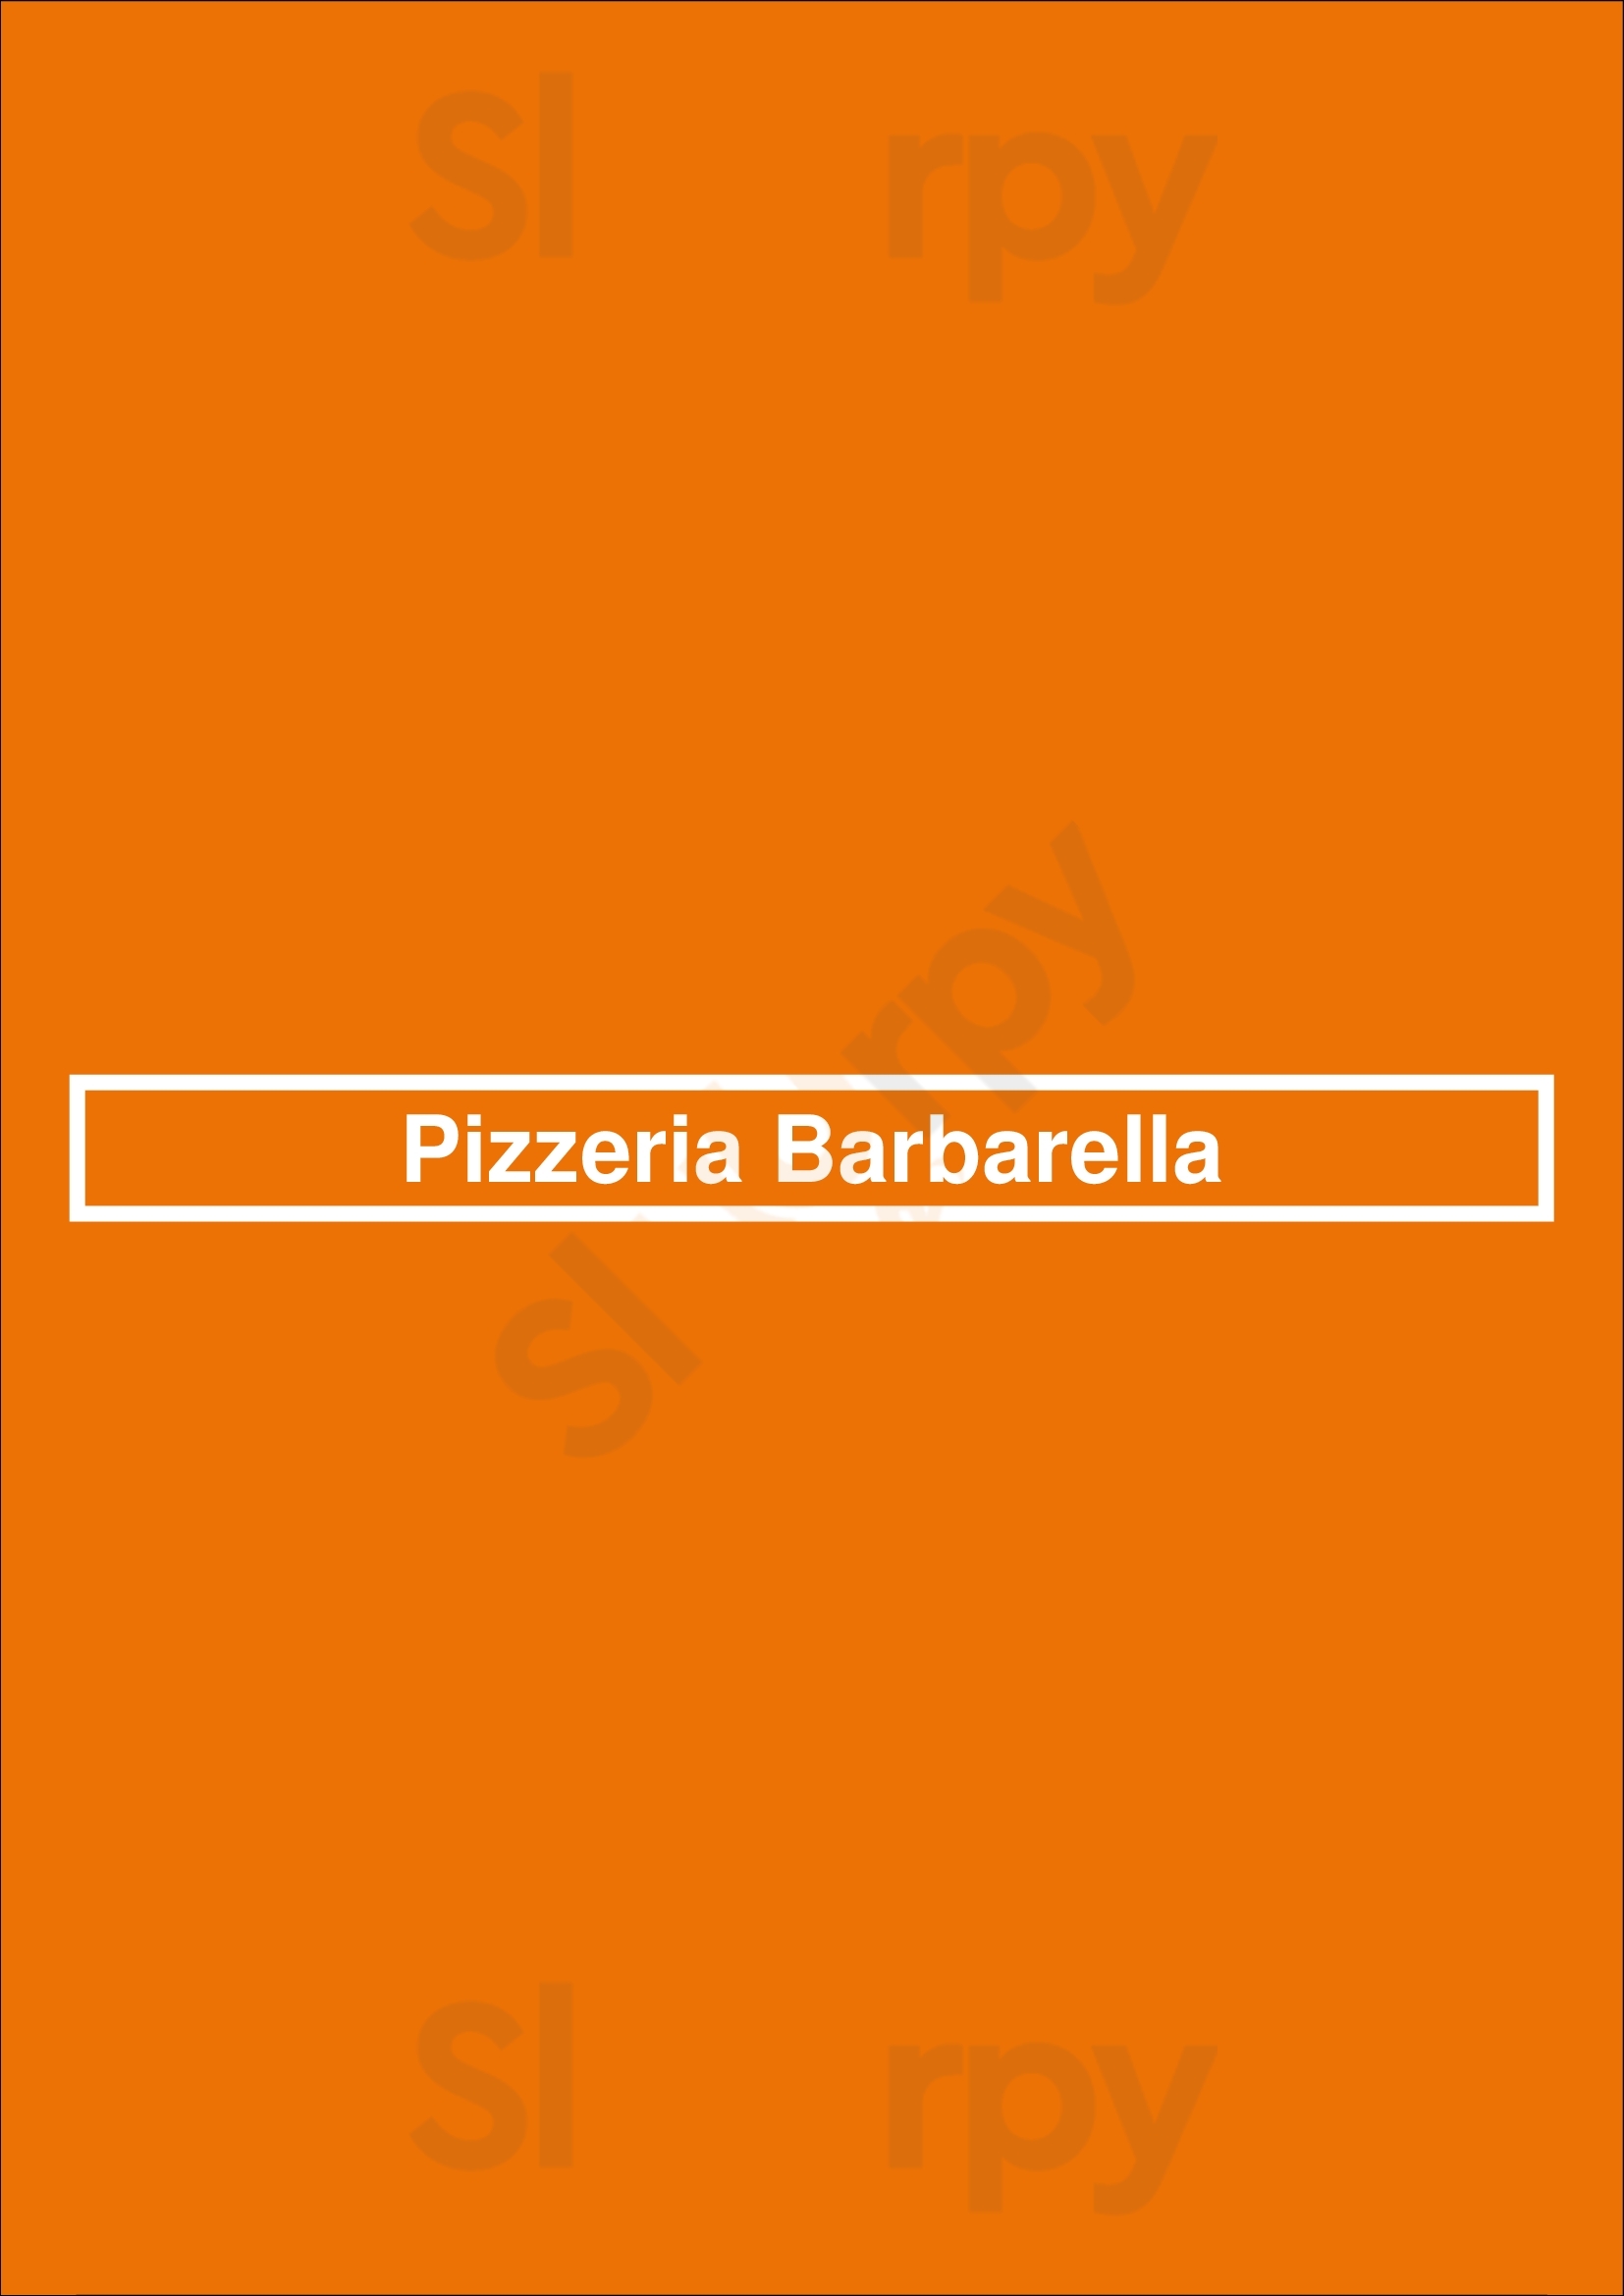 Pizzeria Barbarella Vancouver Menu - 1